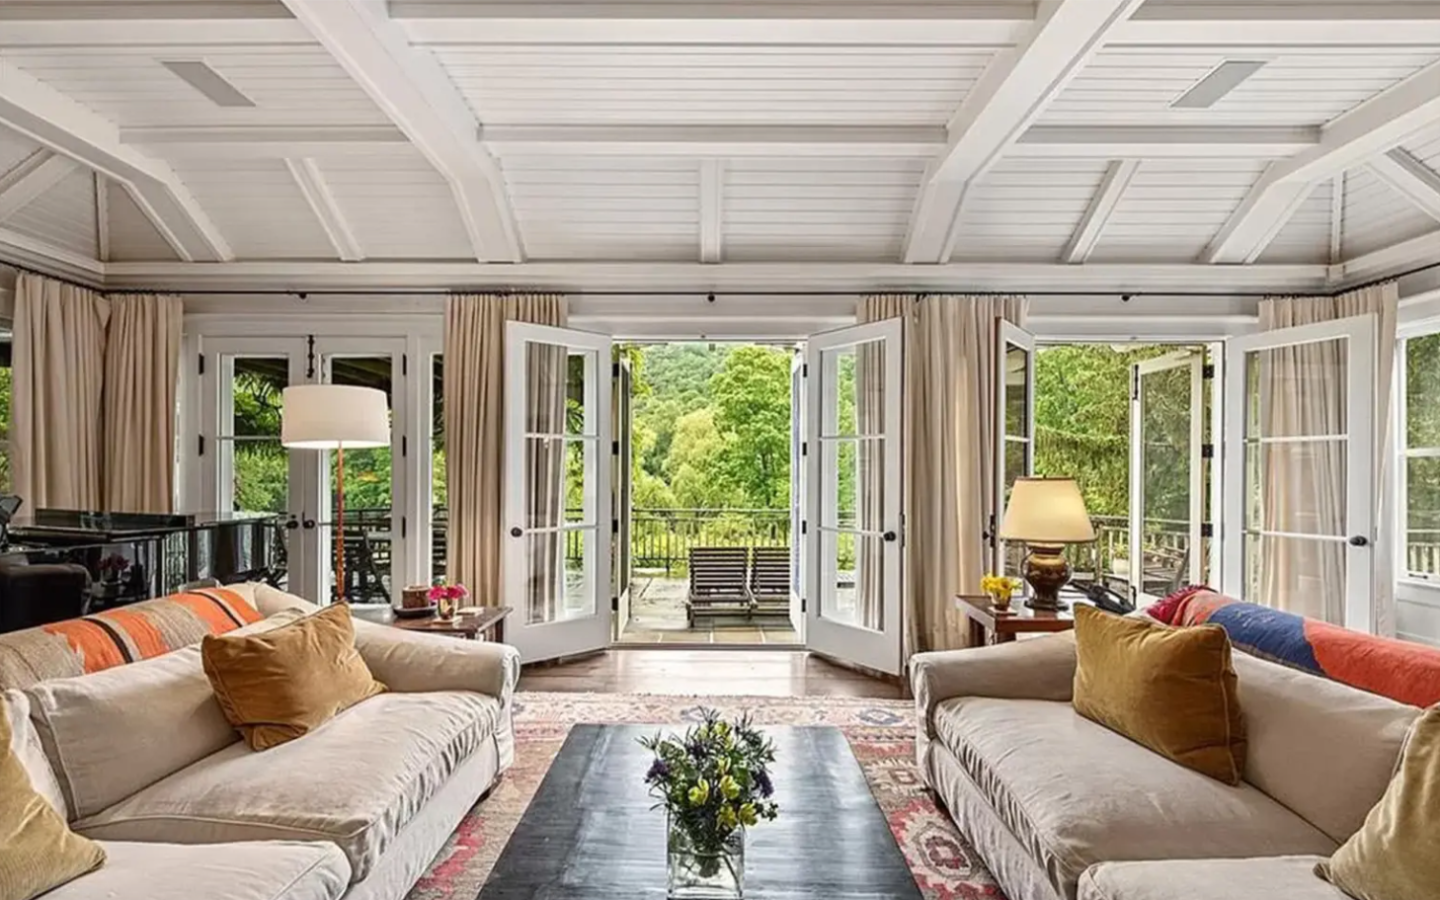 Richard Gere vende mansão por R$ 130 milhões (Foto: Divulgação)